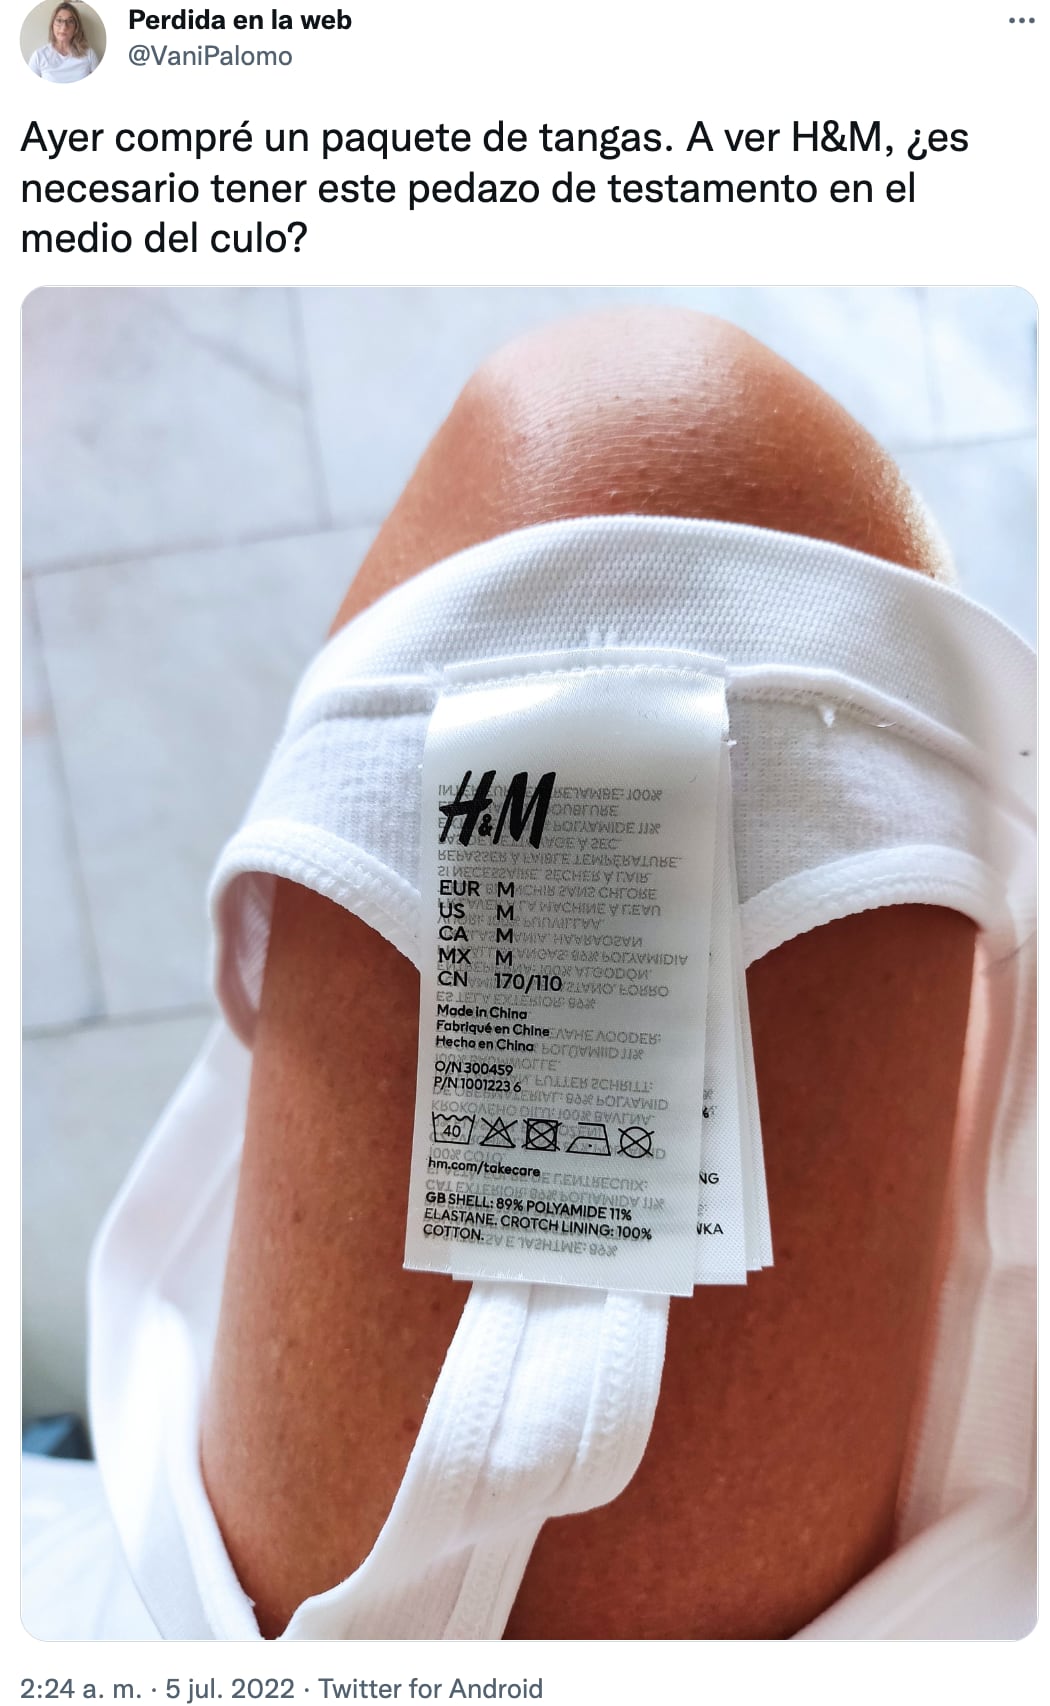 Reclamó a H&M por las etiquetas en una tanga y el hilo de marcas generan